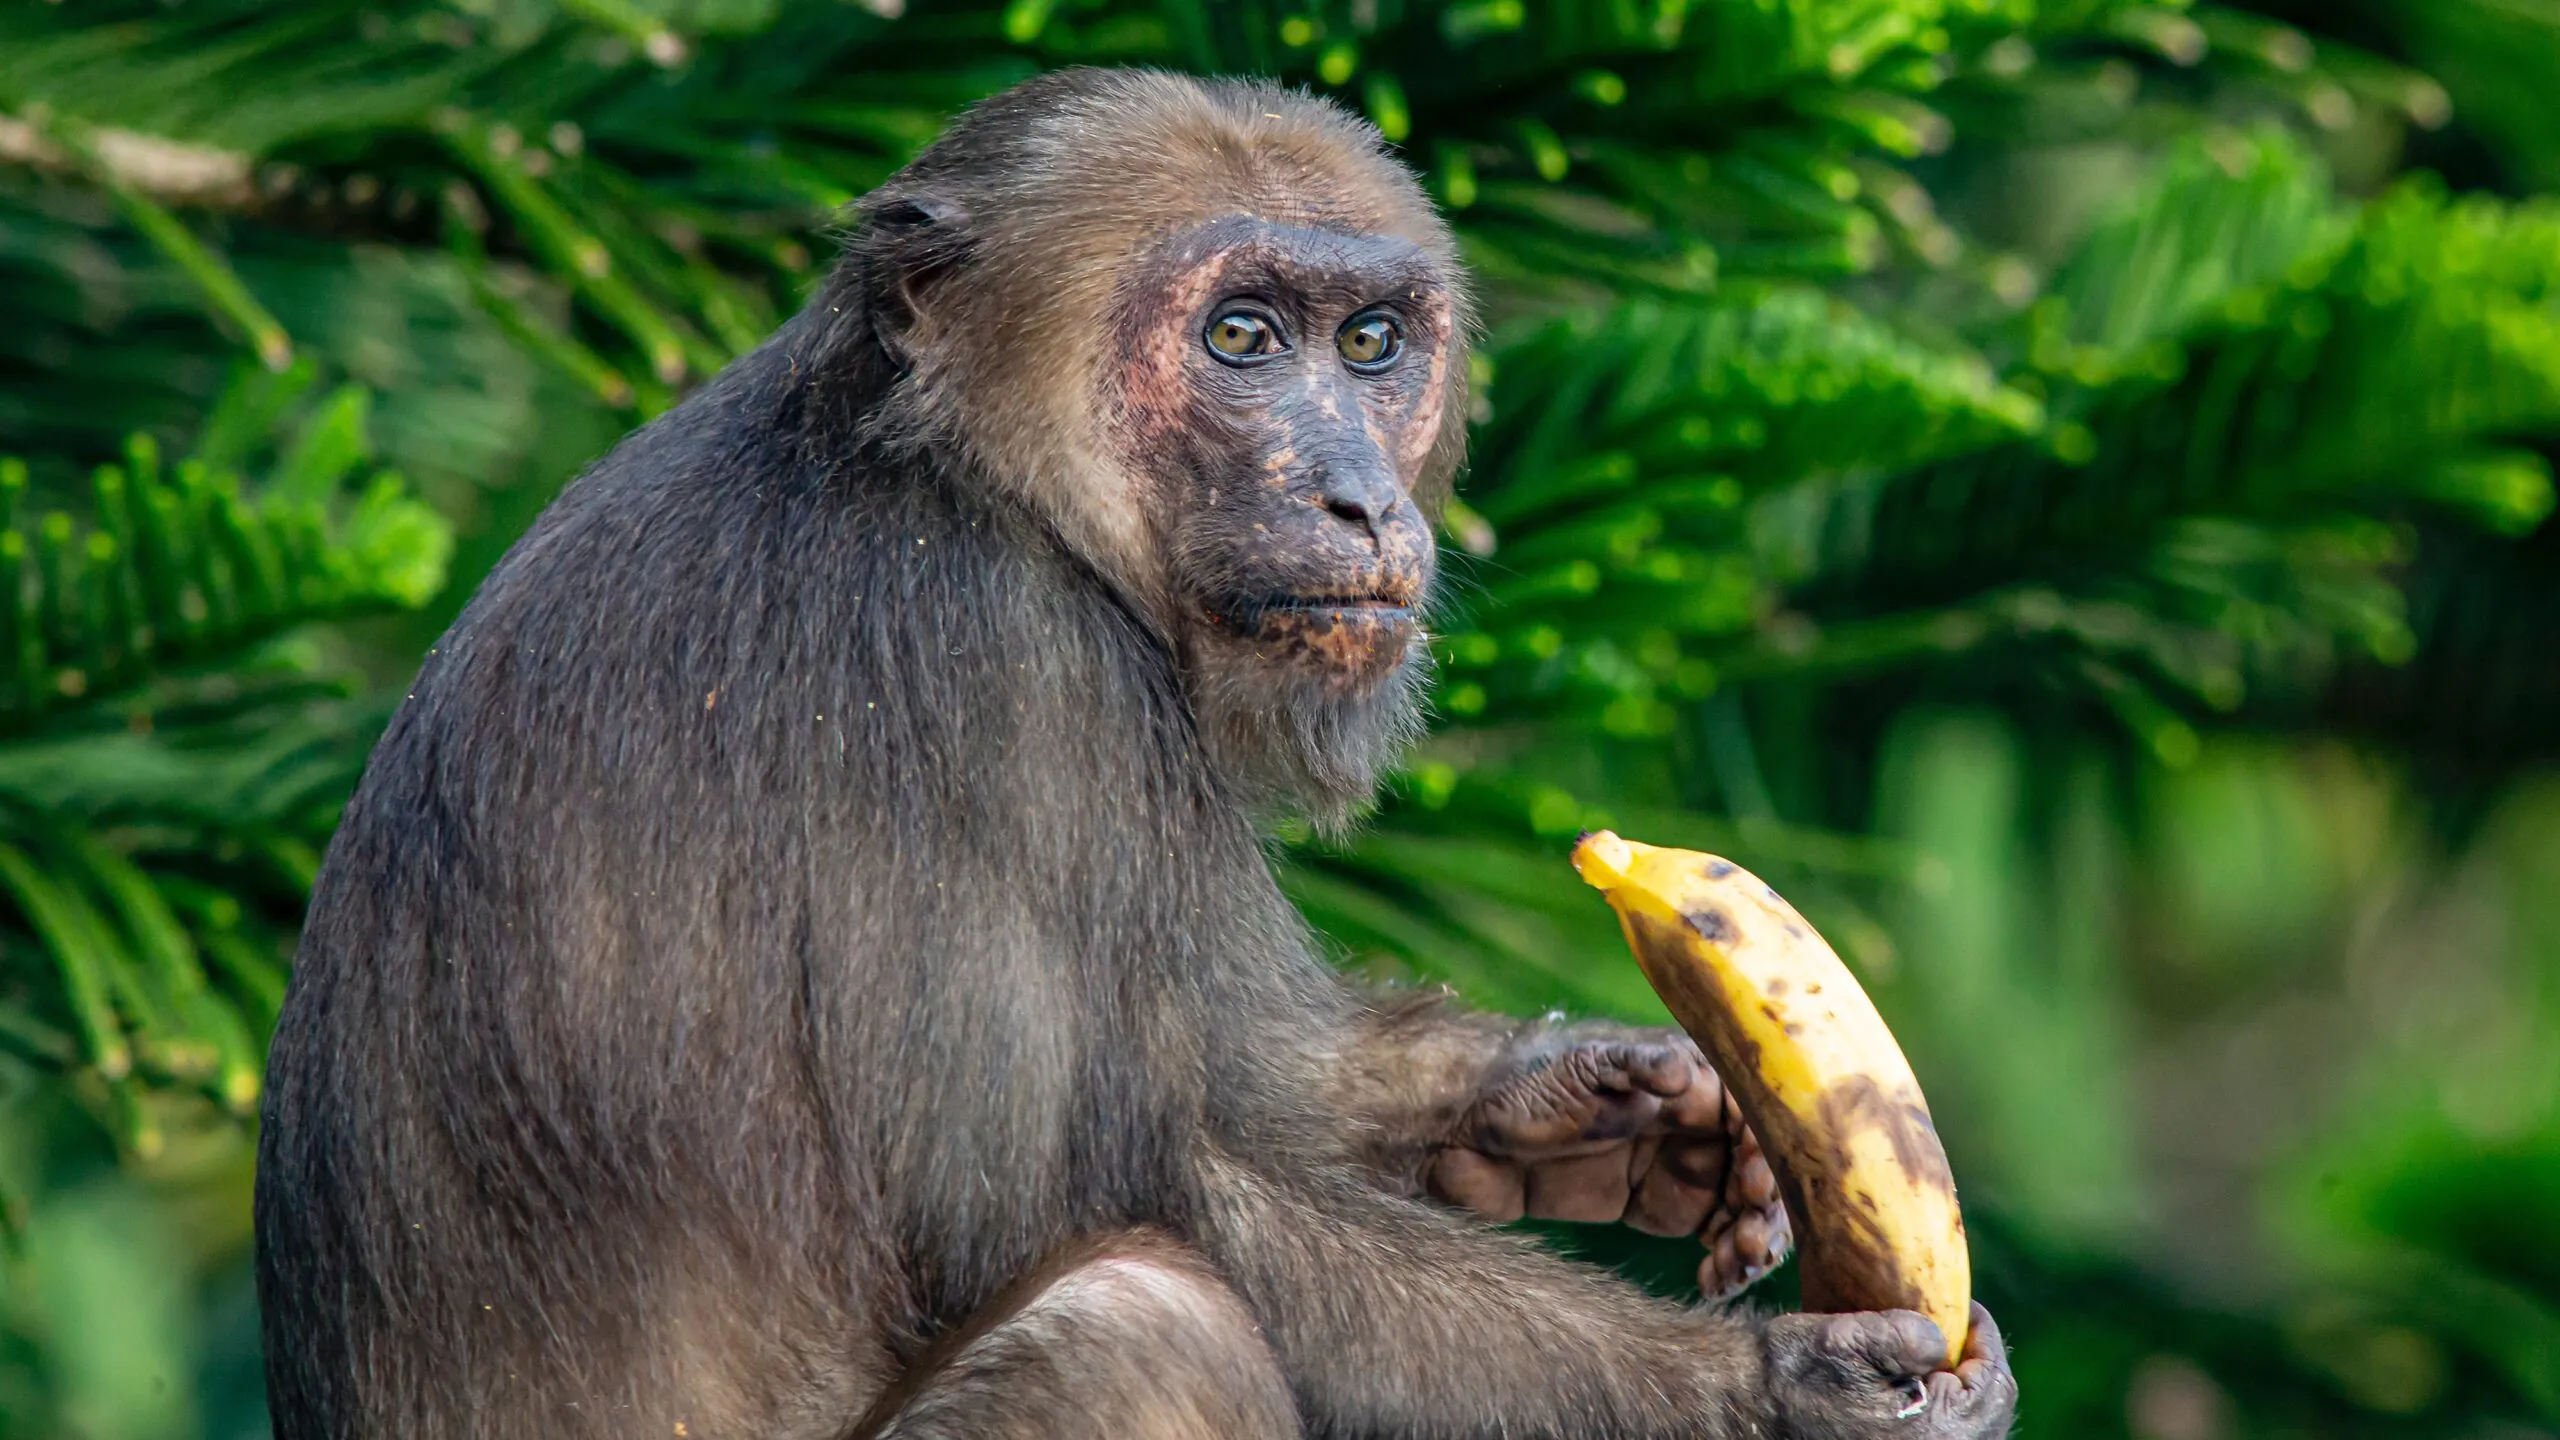 Daj małpie zegarek, bananem będzie nakręcała